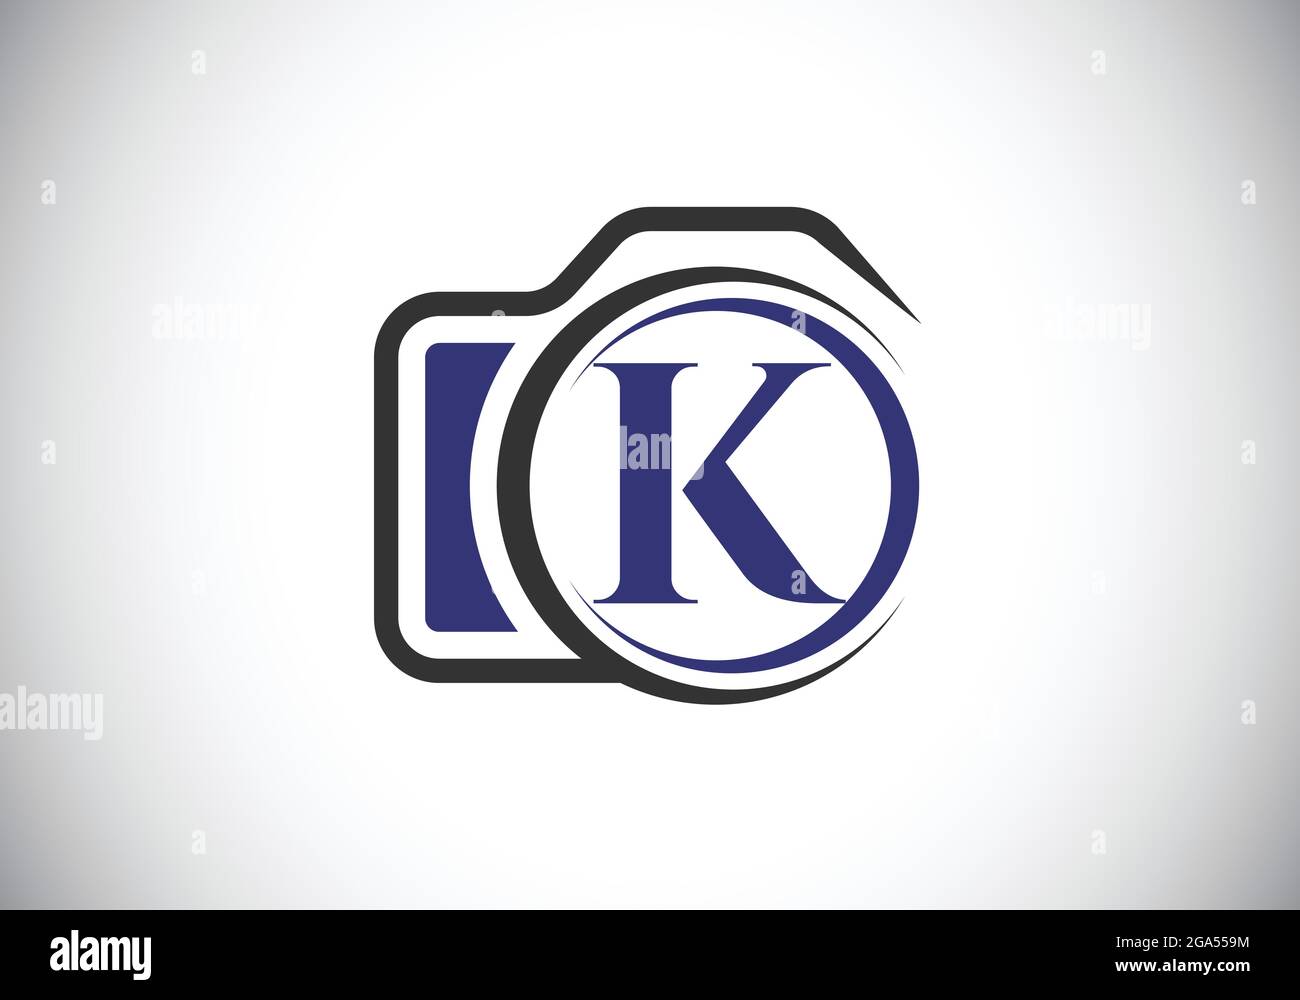 Lettre K monogramme initiale avec une icône d'appareil photo. Illustration vectorielle du logo de photographie. Design moderne du logo pour les entreprises et les entreprises de photographie Illustration de Vecteur